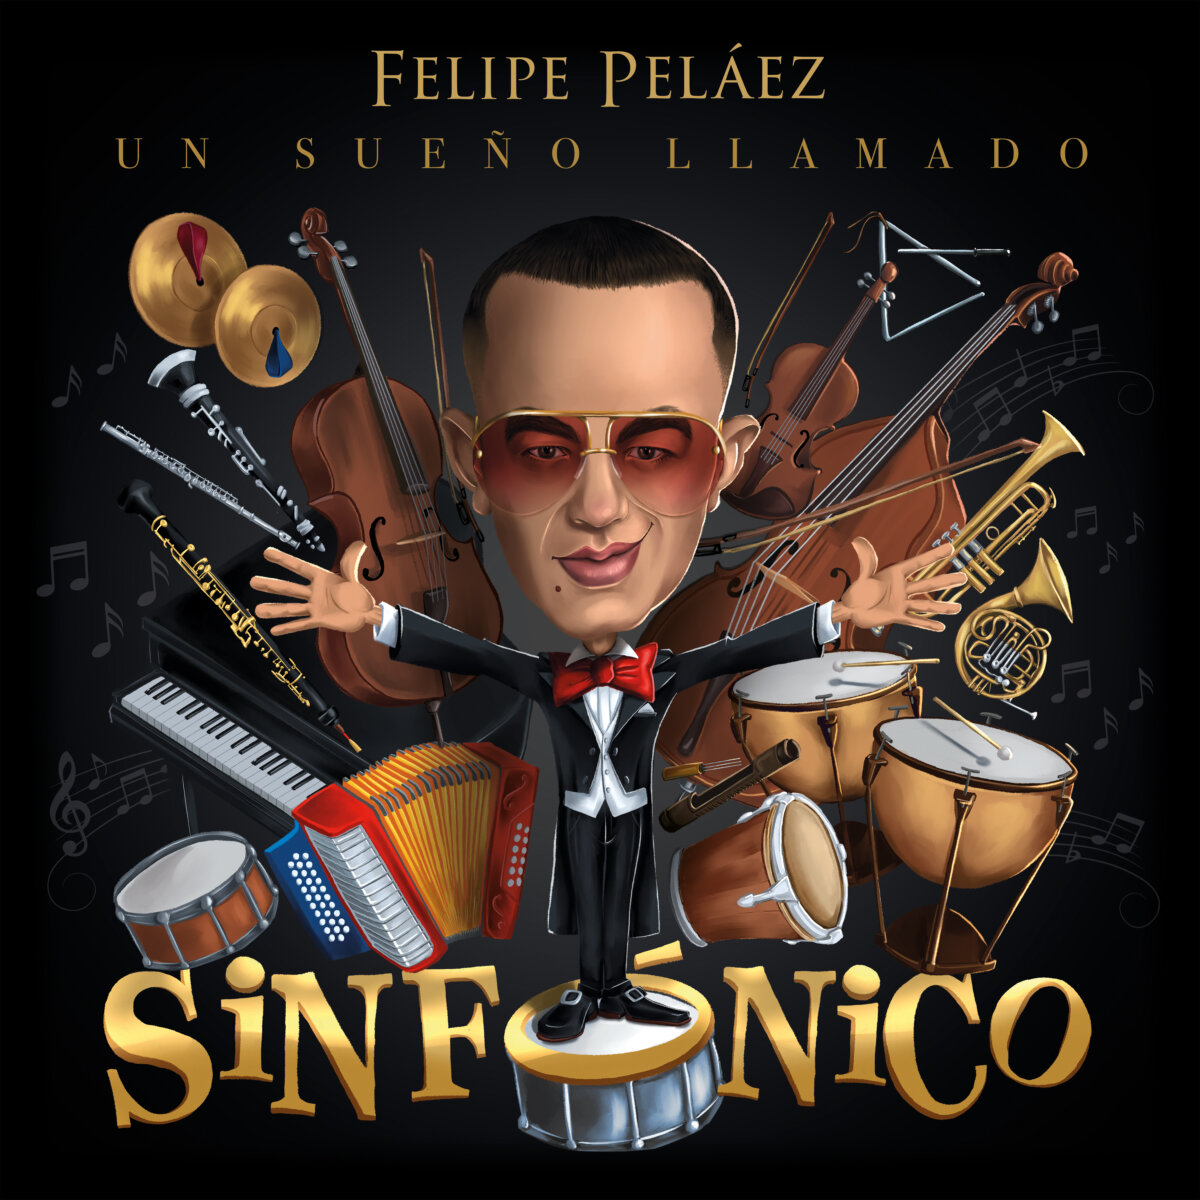 Felipe Peláez ahora se arriesga en lo sinfónico Celebrando sus 20 años de carrera, Felipe Pelaez estrena una nueva versión de él, demostrando su versatilidad como músico, con su nuevo album 'Un Sueño Llamado Sinfonico'